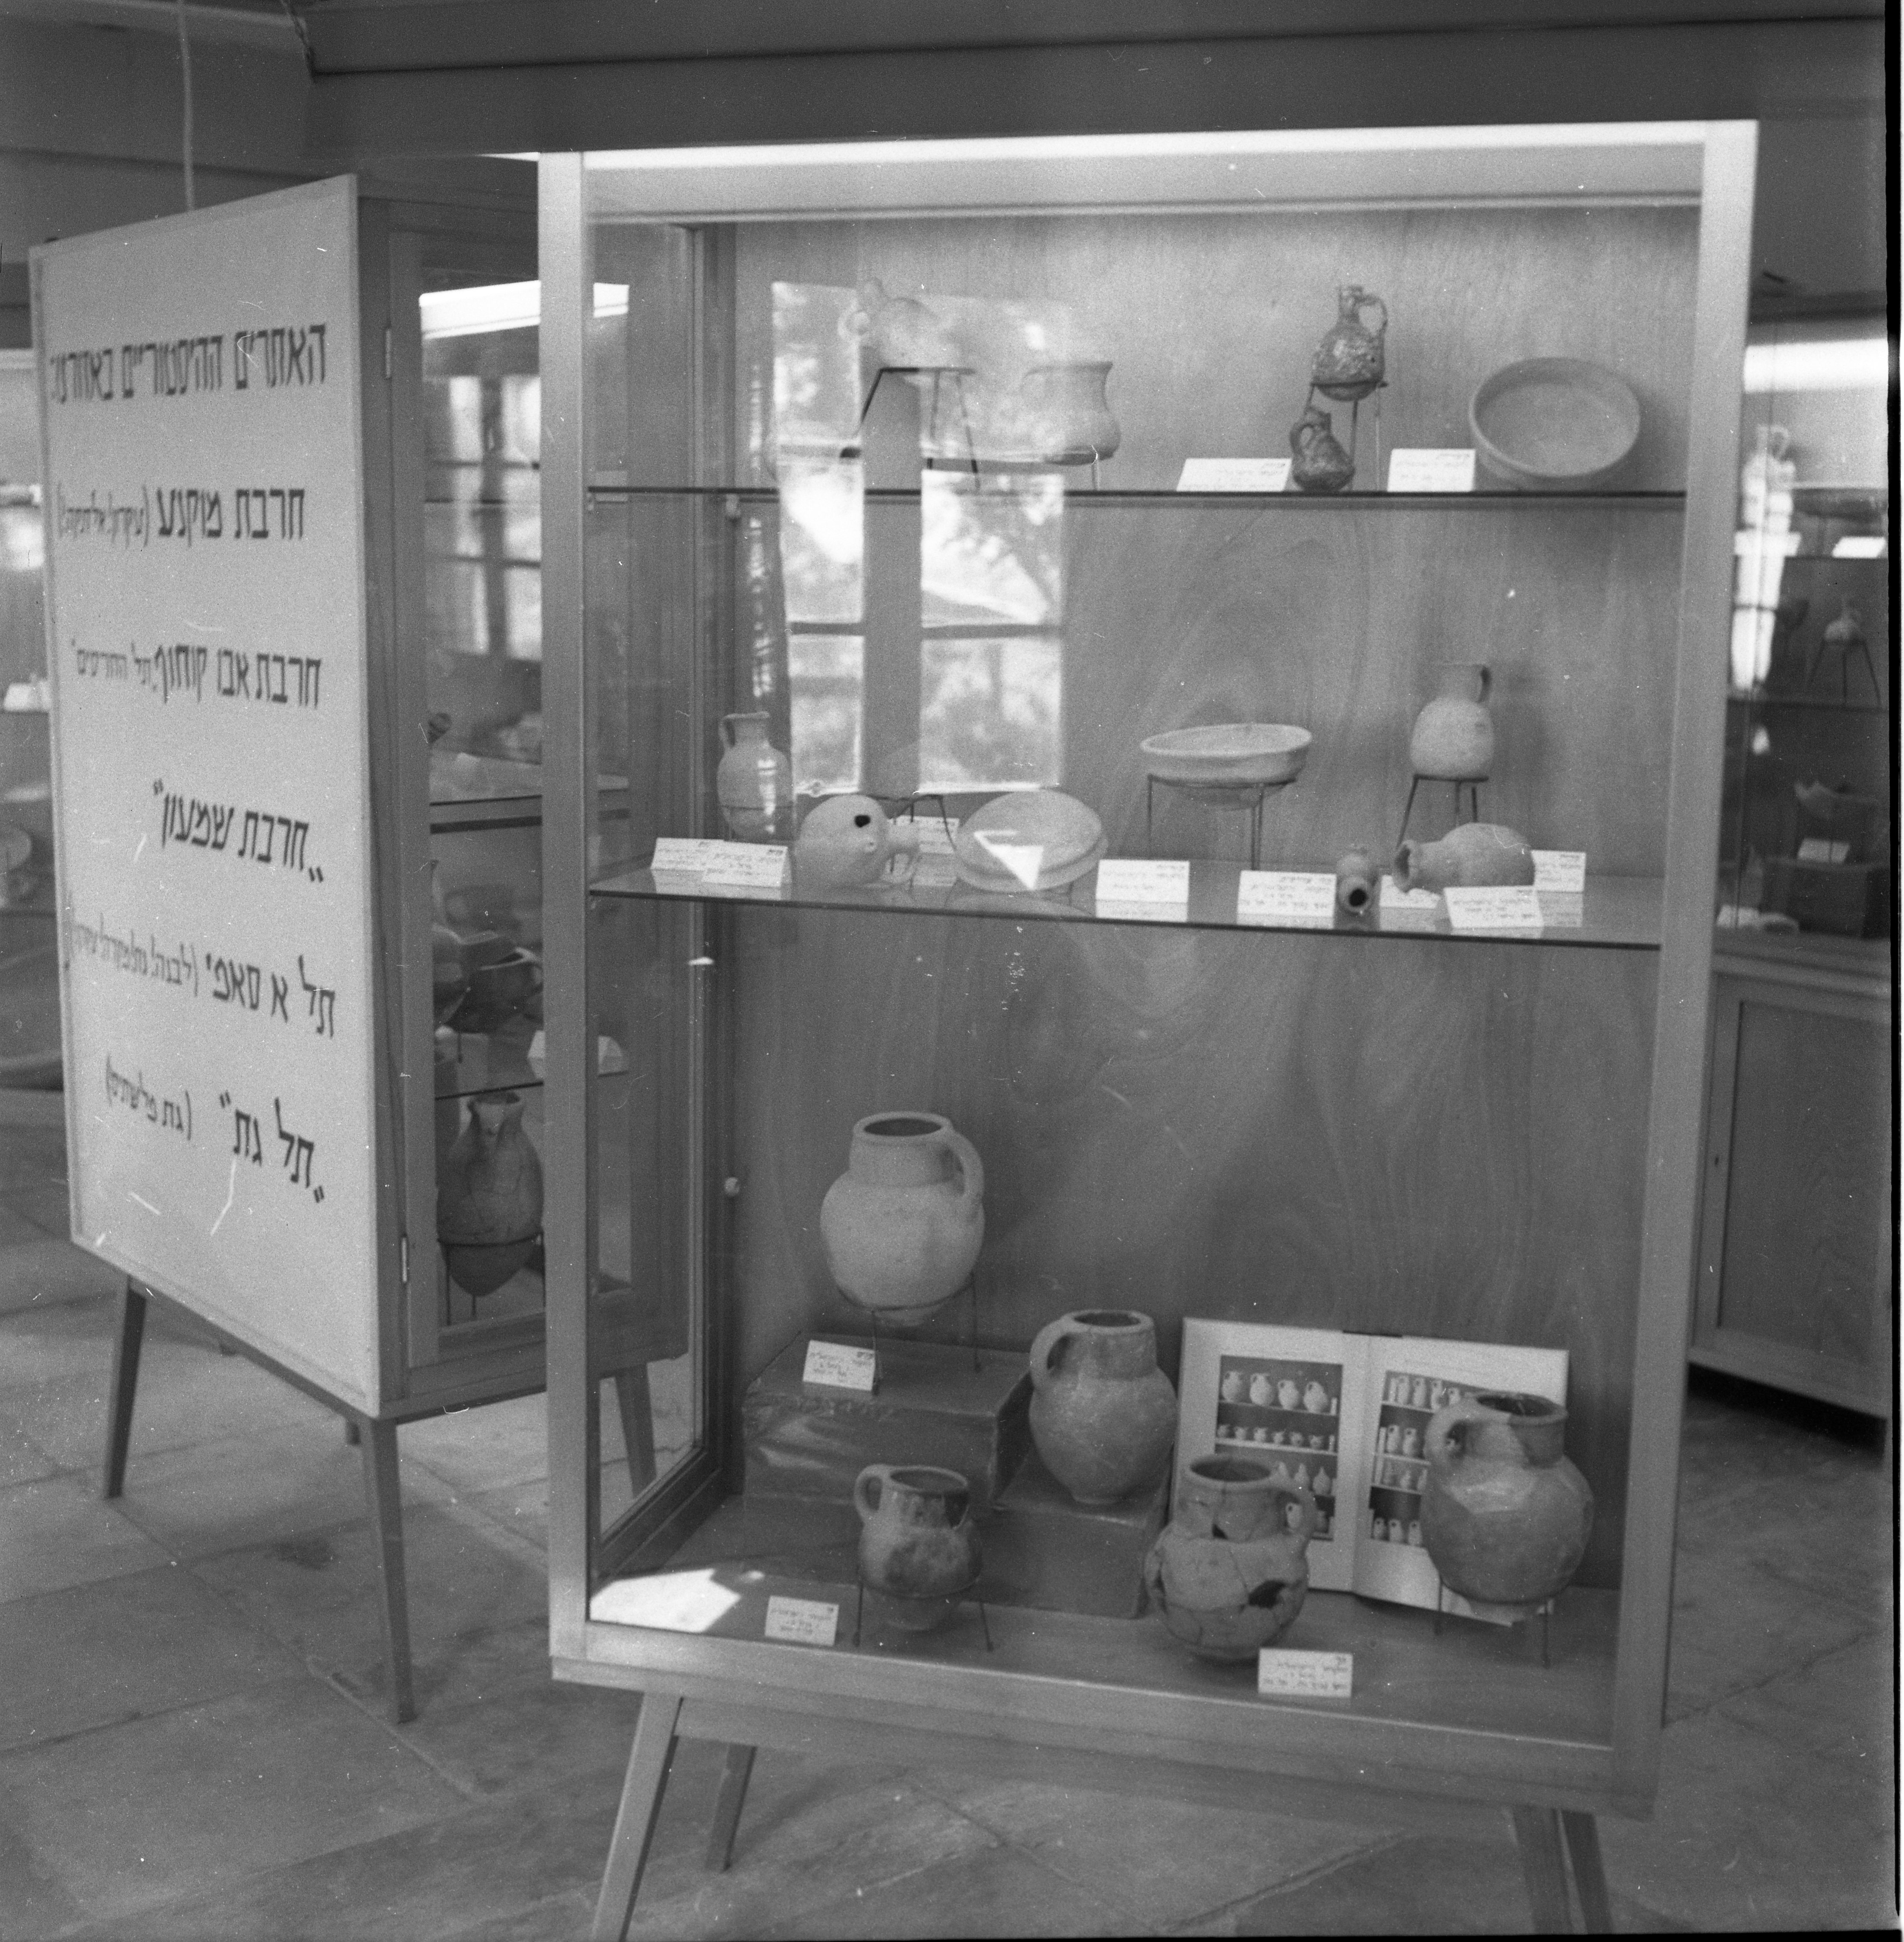  מוצגים במוזיאון השפלה. ארכיאולוגיה; 1958